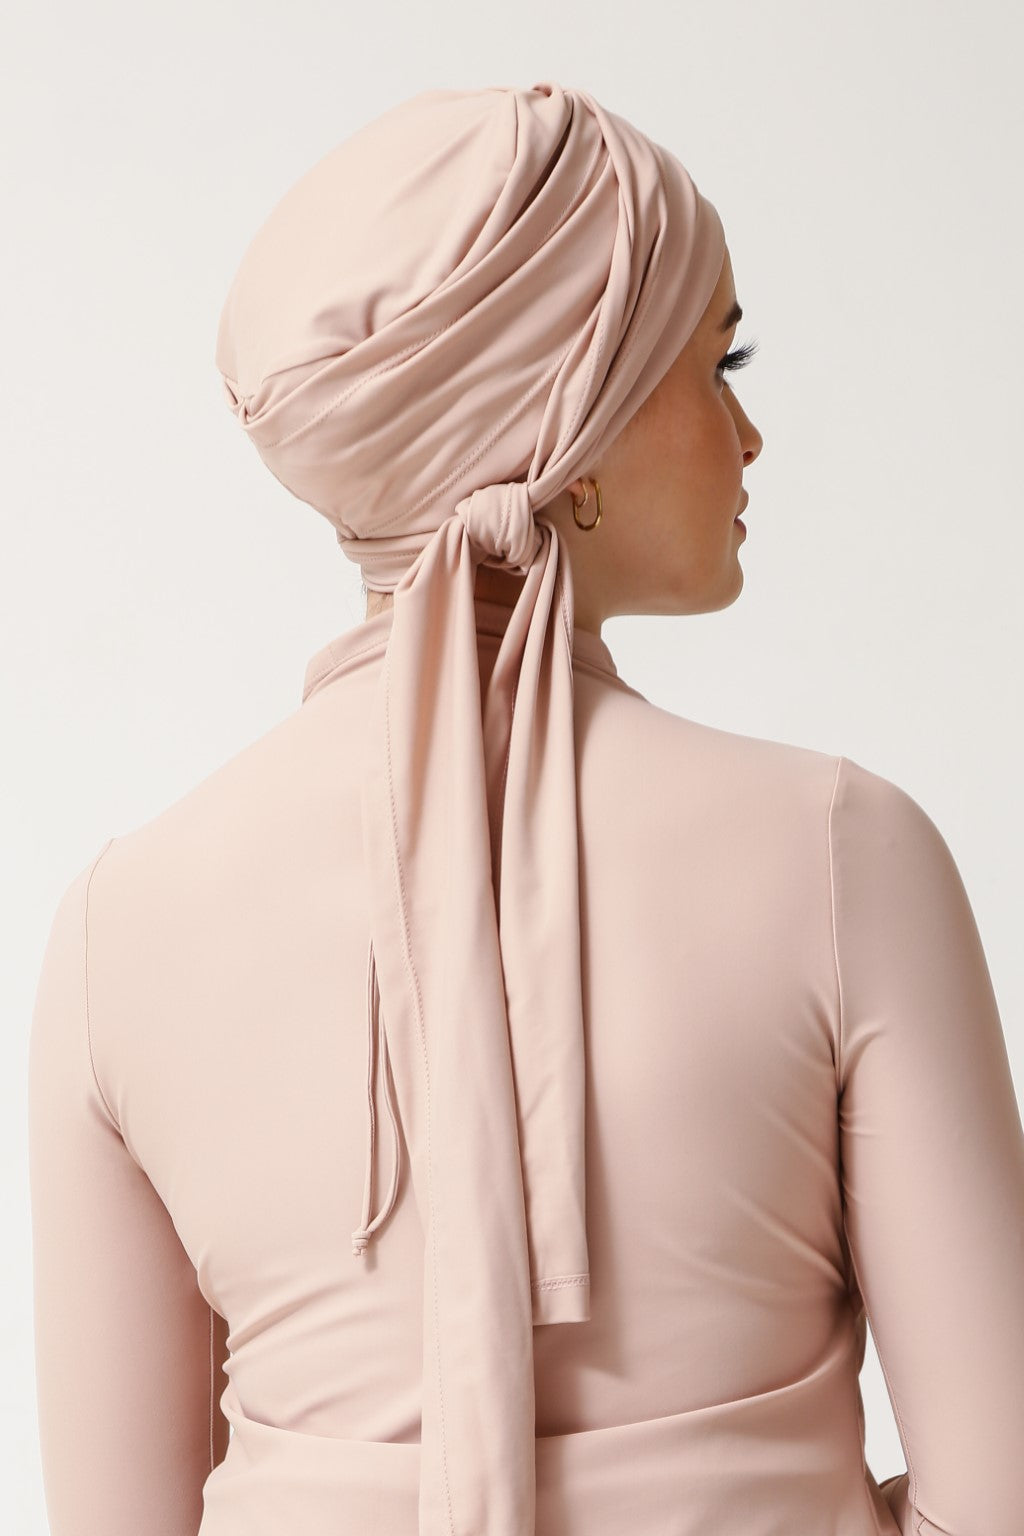 Lanuuk Self - tie Turban - Shell | Active Swim Hijab Scarf Modest Swimwear Burkini